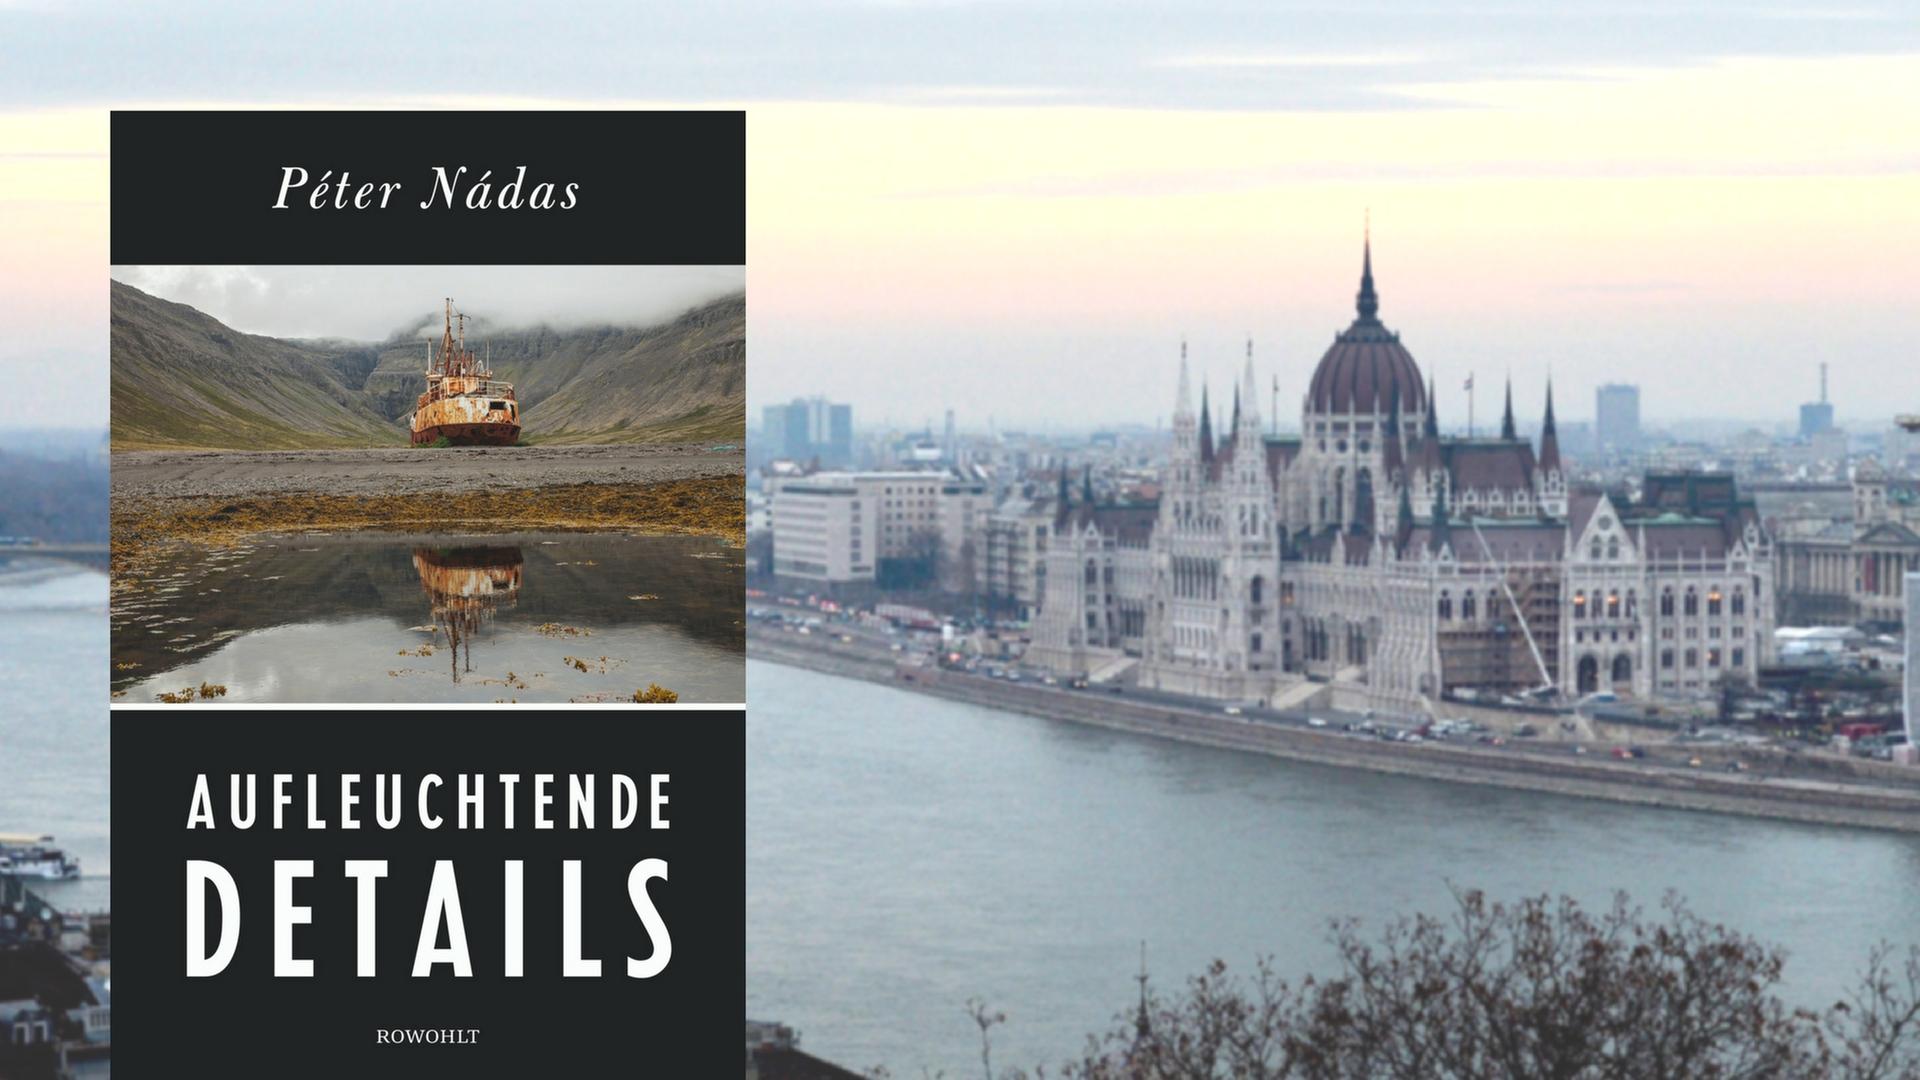 Buchcover "Aufleuchtende Details" von Péter Nádas, im Hintergrund das Panorama der ungarischen Hauptstadt Budapest